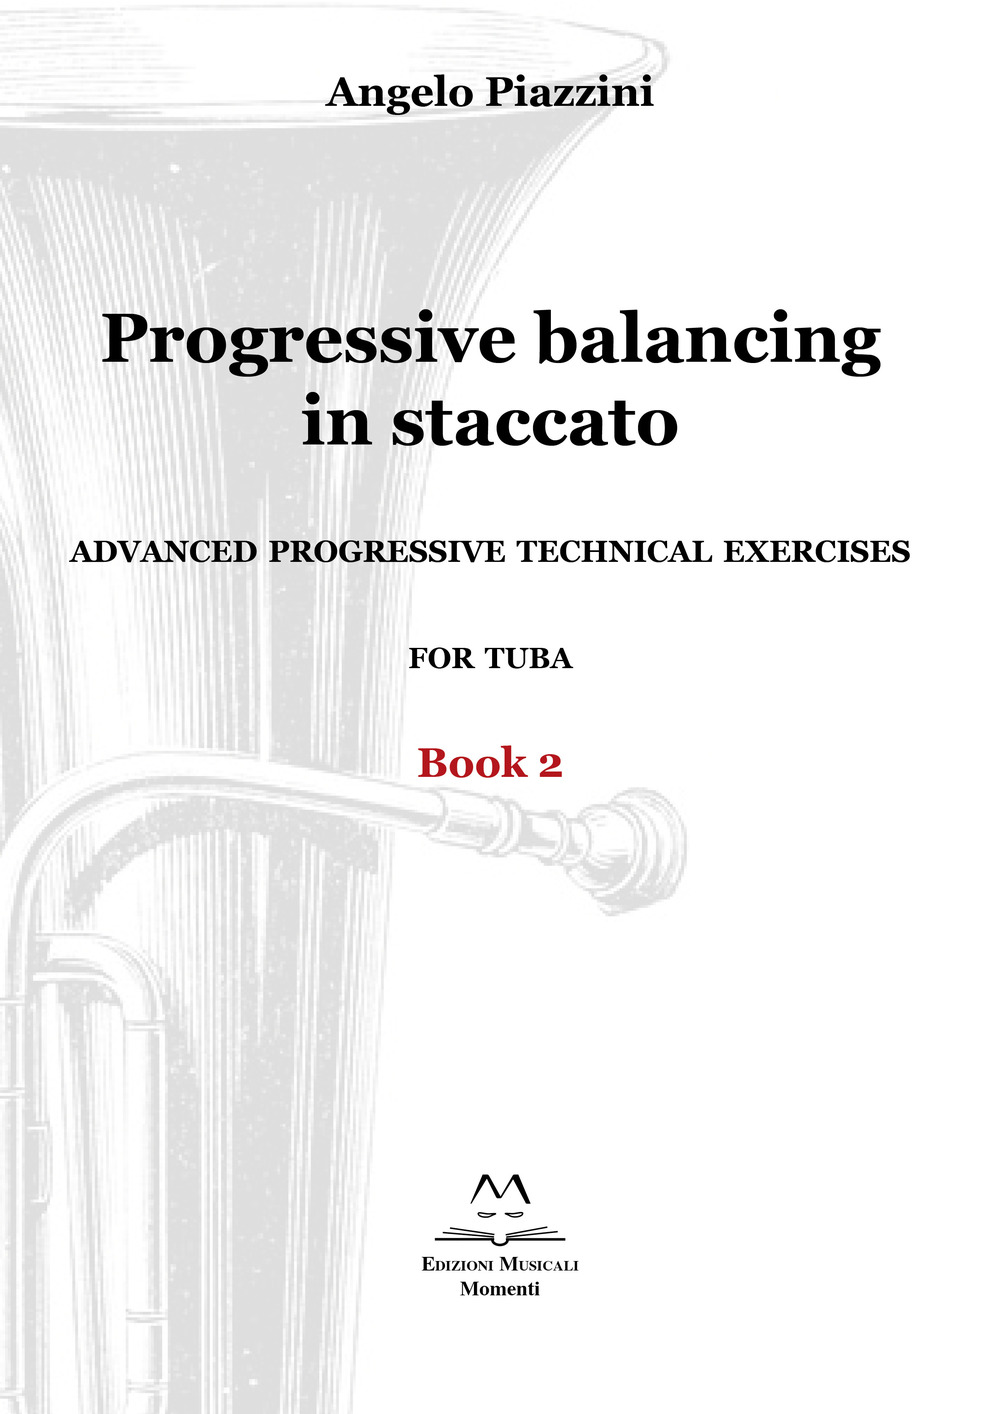 Progressive balancing in staccato. Advanced progressive technical exercises for tuba. Vol. 2